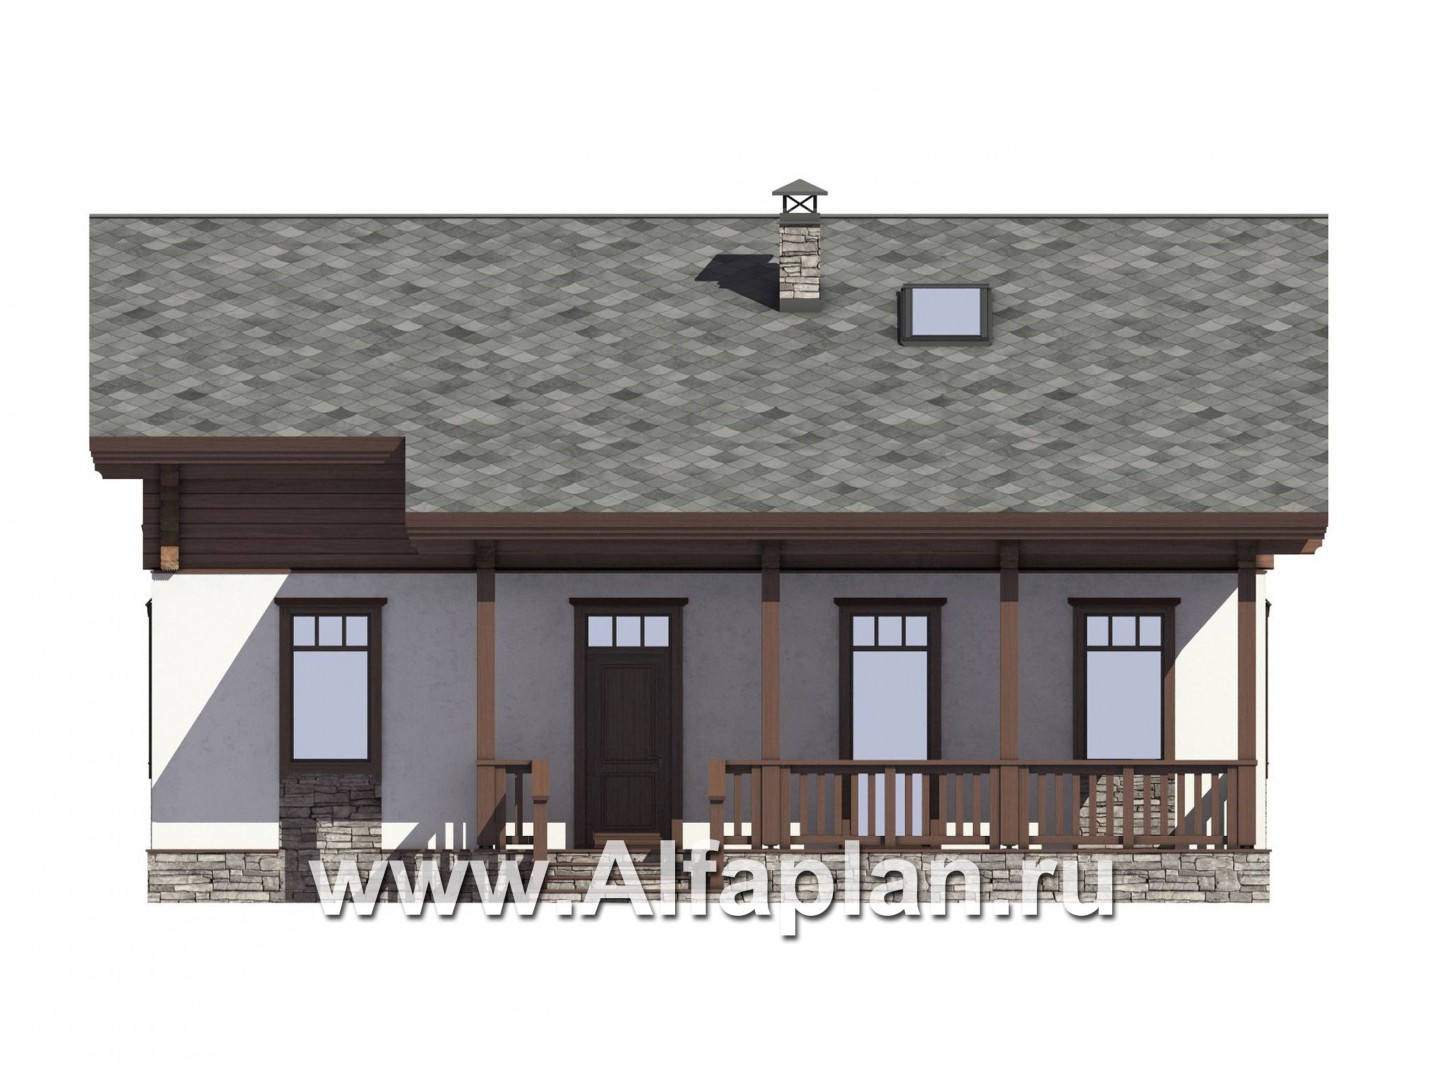 Проект дома с мансардой, планировка две спальни на 1 эт, с террасой,в стиле шале - фасад дома